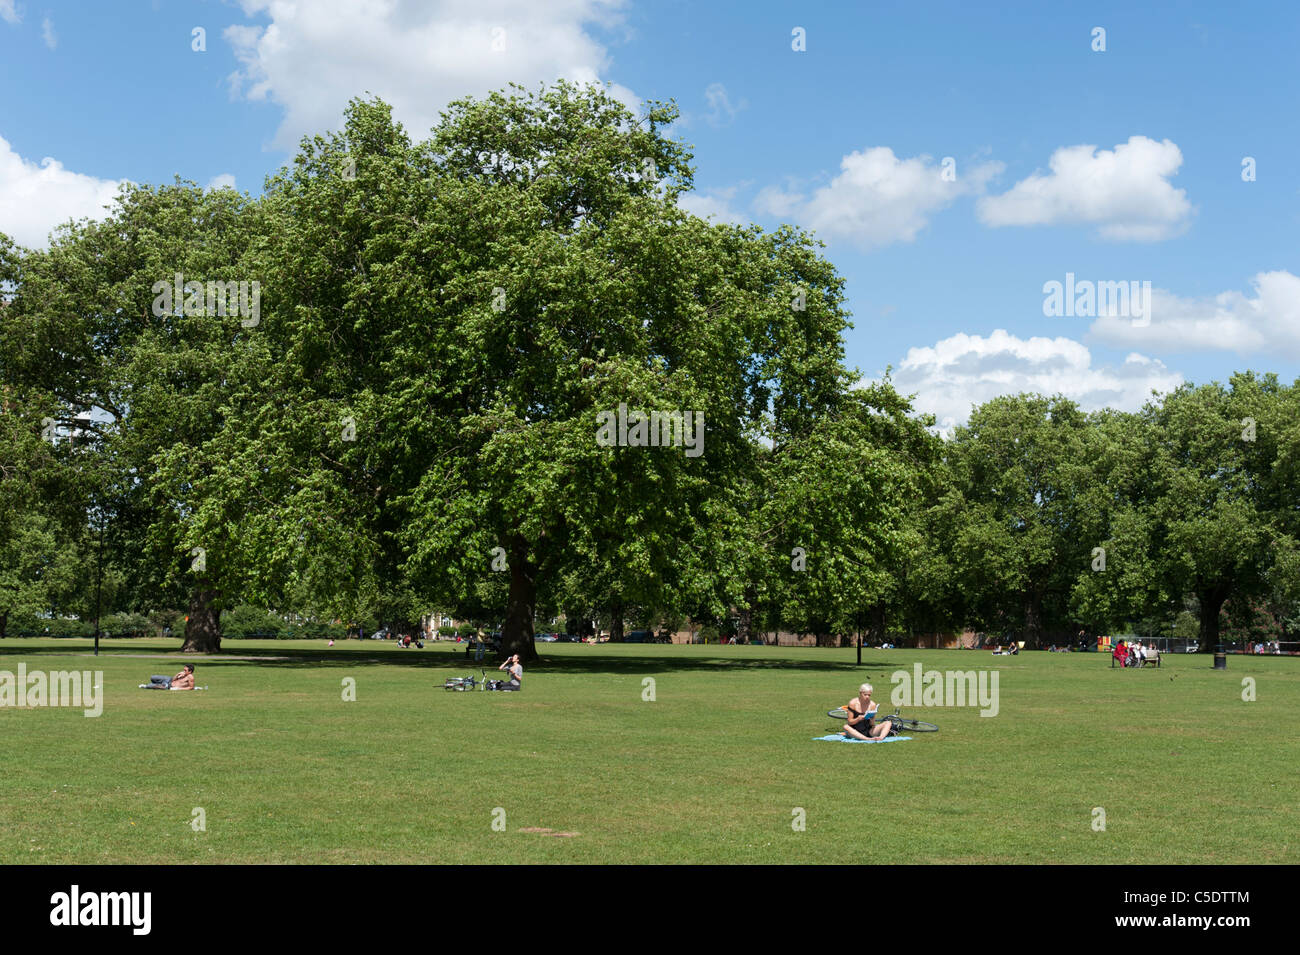 London Fields in Hackney, UK Stock Photo